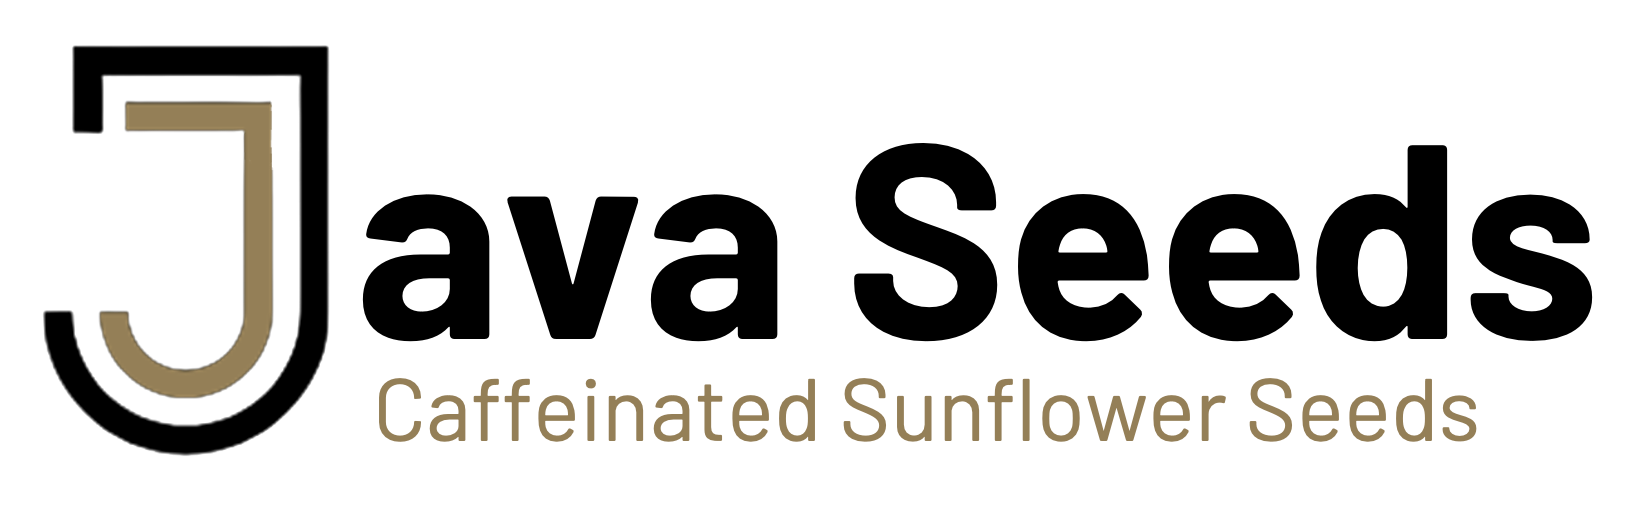 Java Seeds